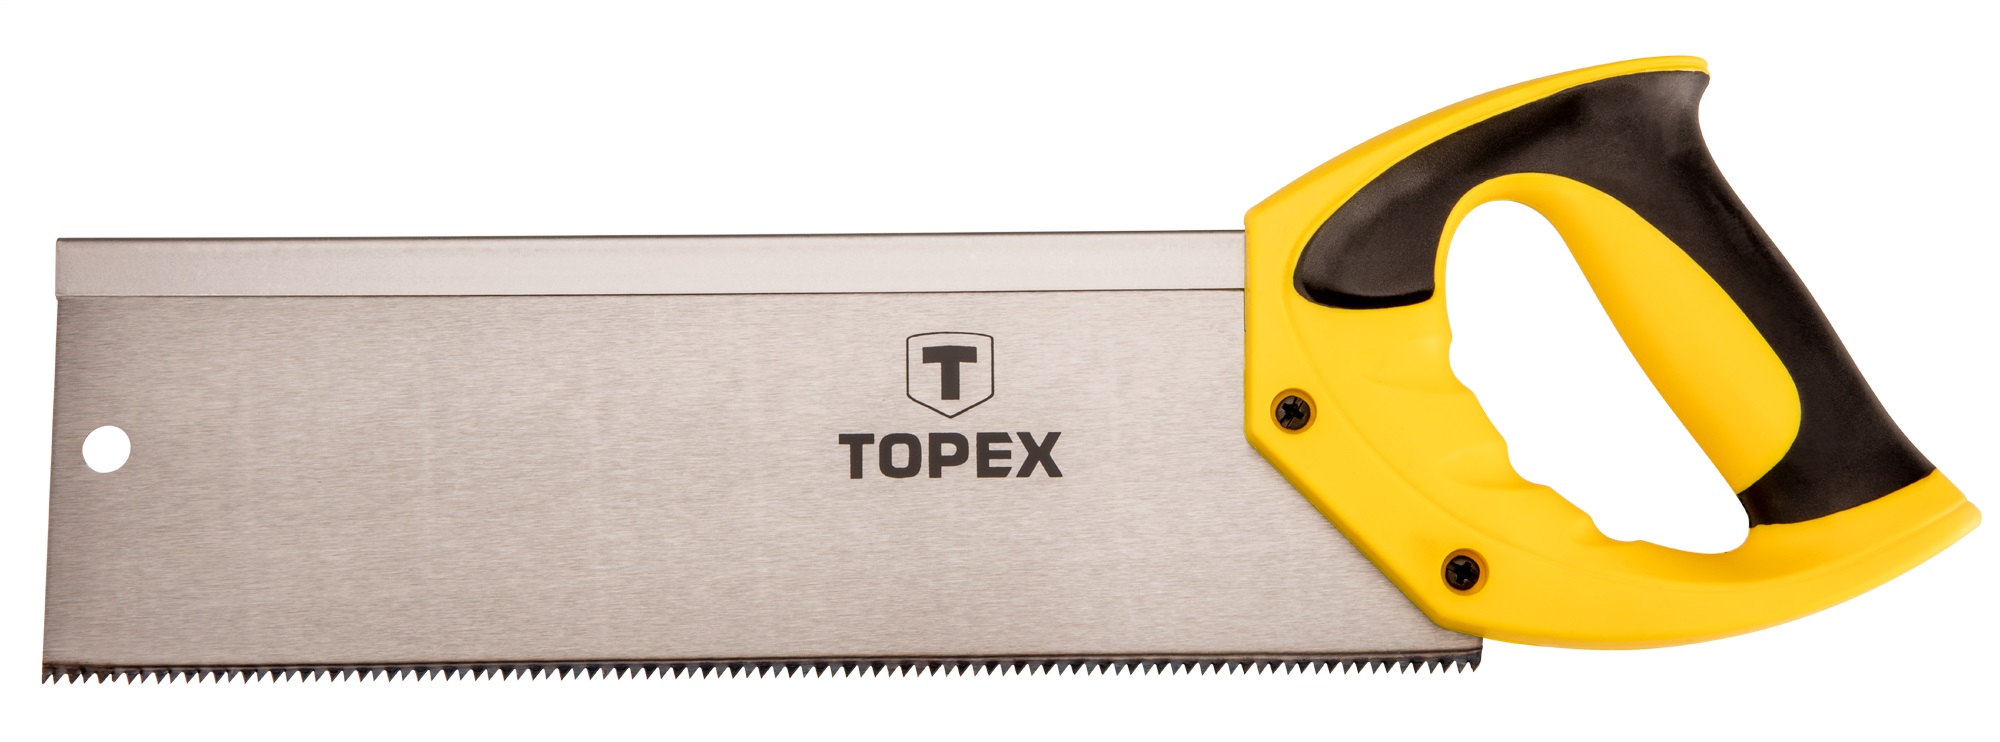 Ножівка по дереву Topex 10A706 350 мм, 13TPI (10A706) в Києві